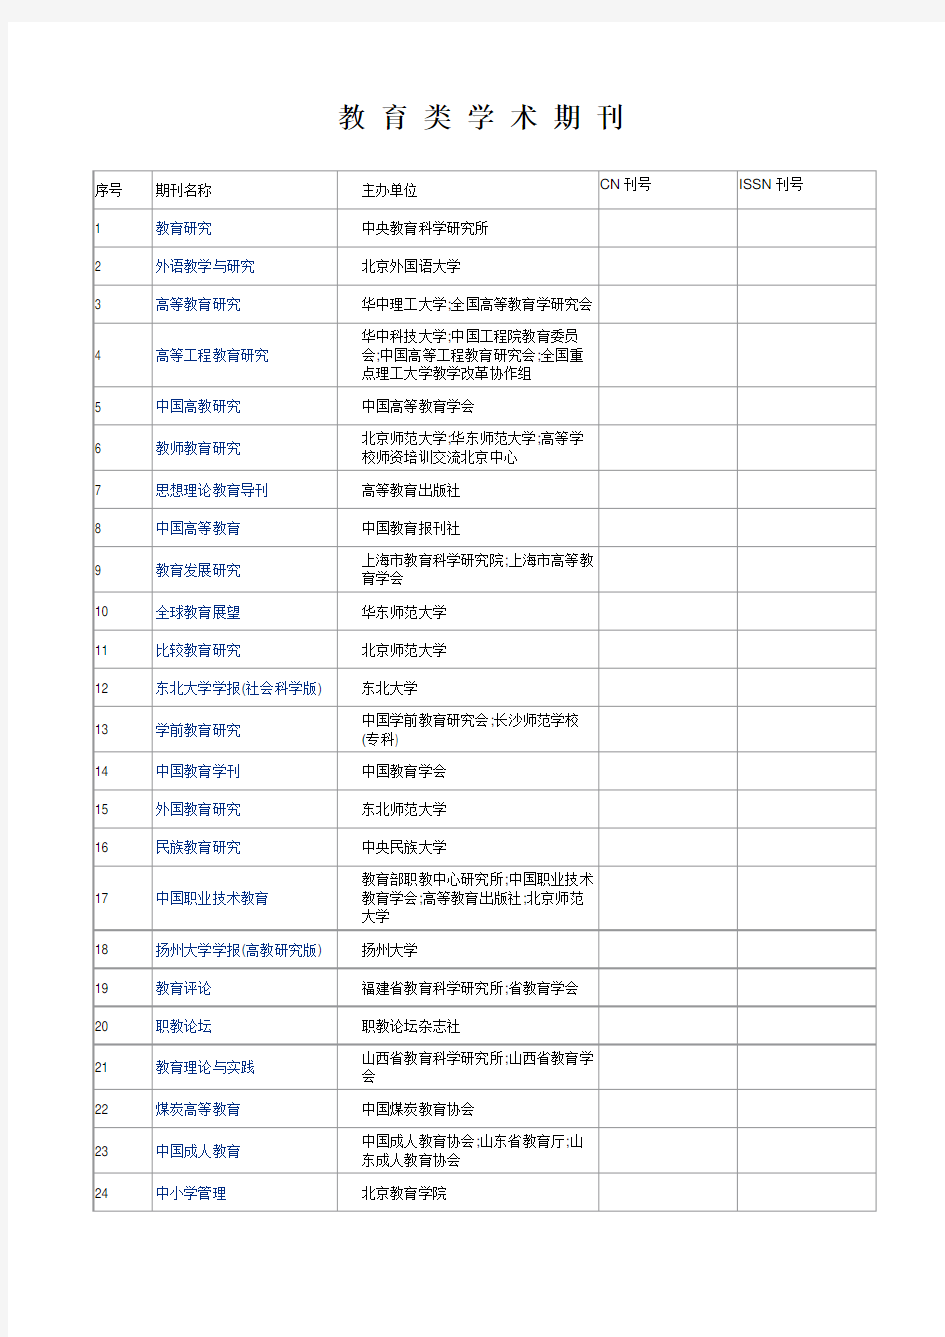 中国知网收录的教育类学术期刊